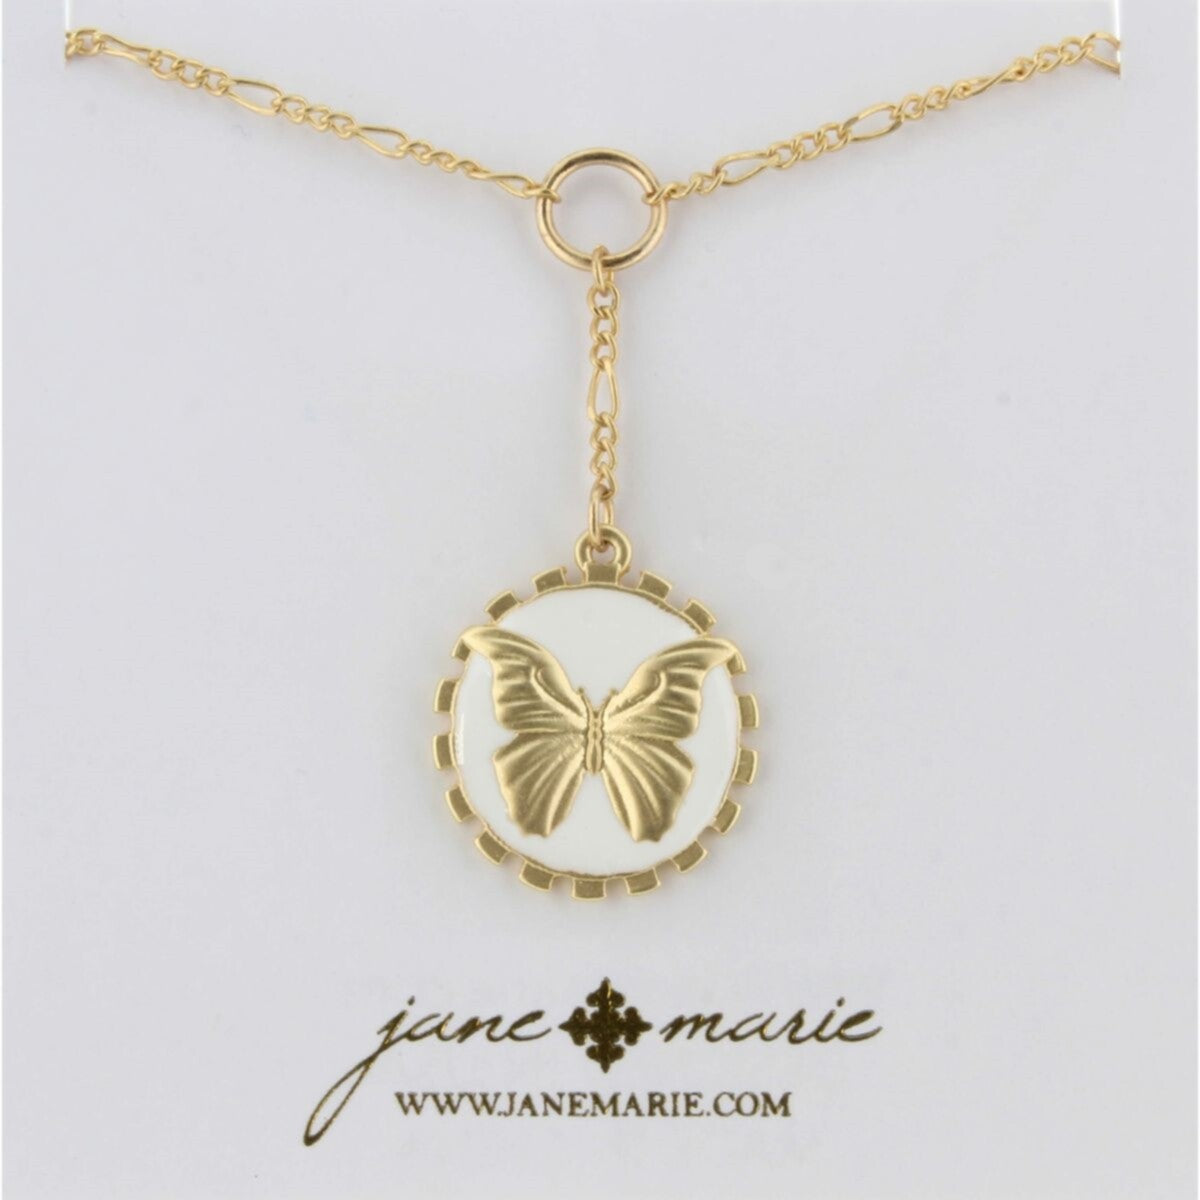 Lariat de cadena de oro de 16", collar con amuleto de esmalte blanco con mariposa dorada, 2" ext. 